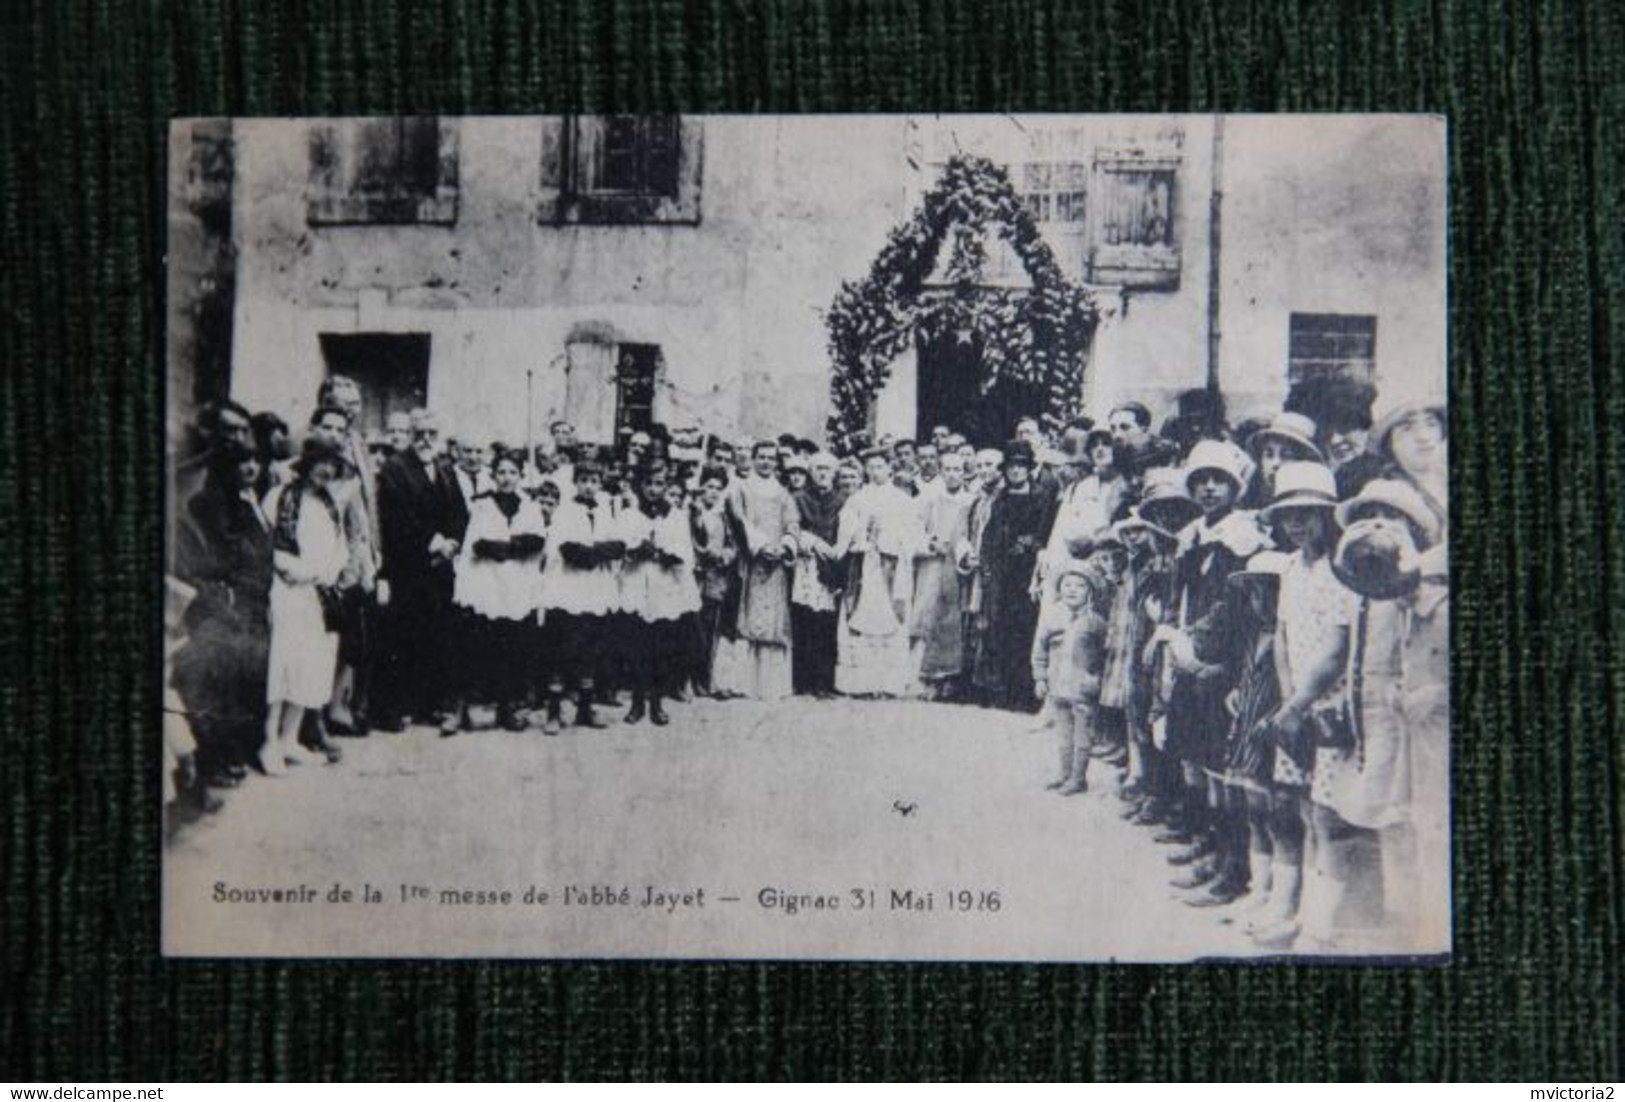 GIGNAC - Souvenir De La 1ère Messe De L'Abbé JAYET , Le 31 MAI 1926. - Gignac